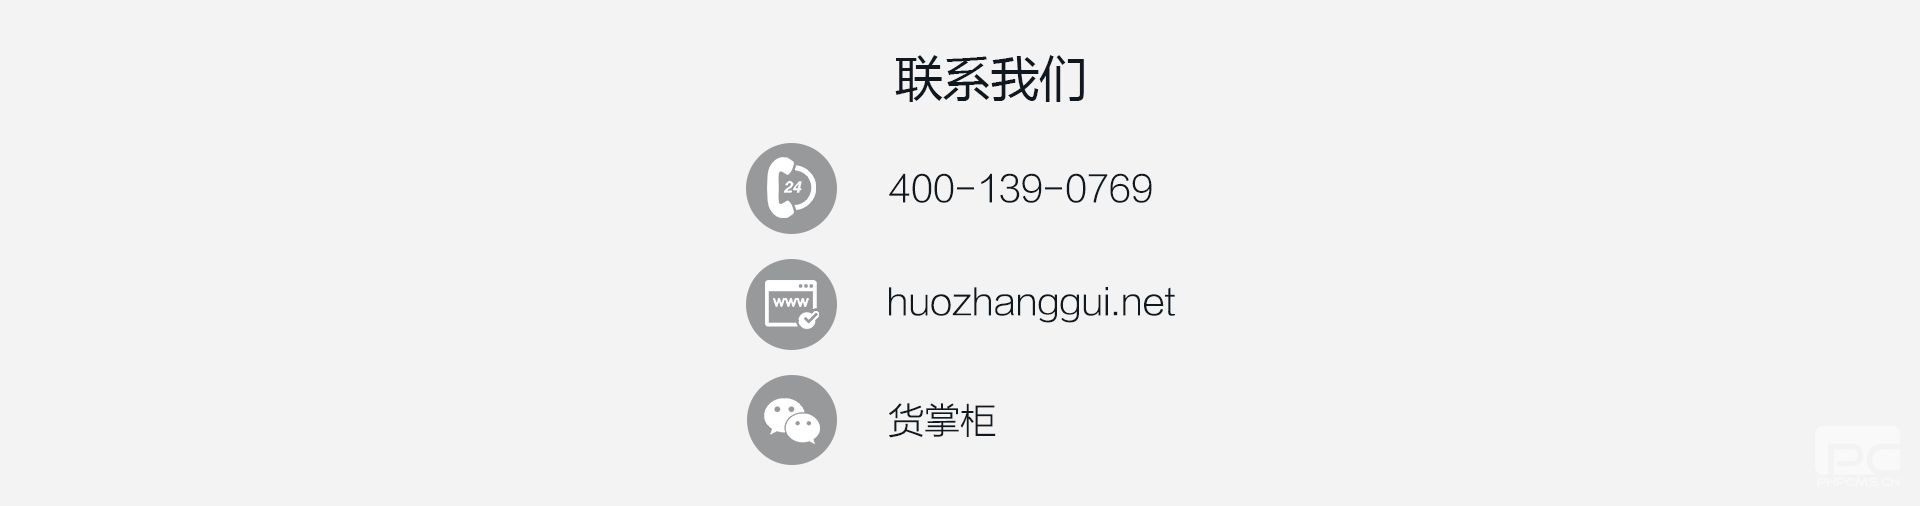 货掌柜货代企业解决方案6（www.huozhanggui.net）